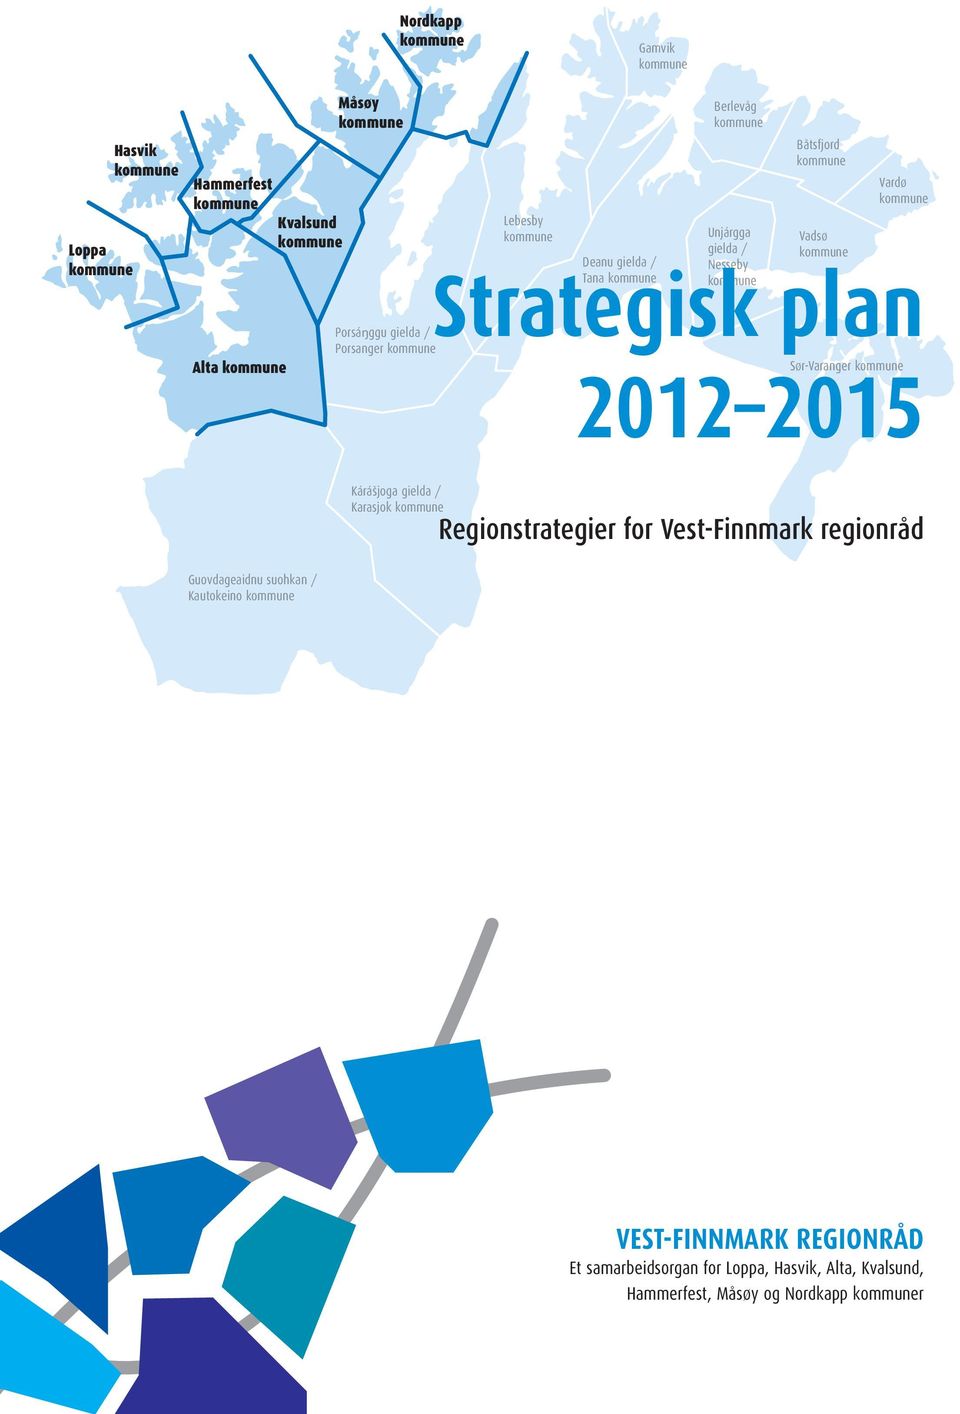 2015 Kárášjoga gielda / Karasjok Regionstrategier for Vest-Finnmark regionråd Guovdageaidnu suohkan /